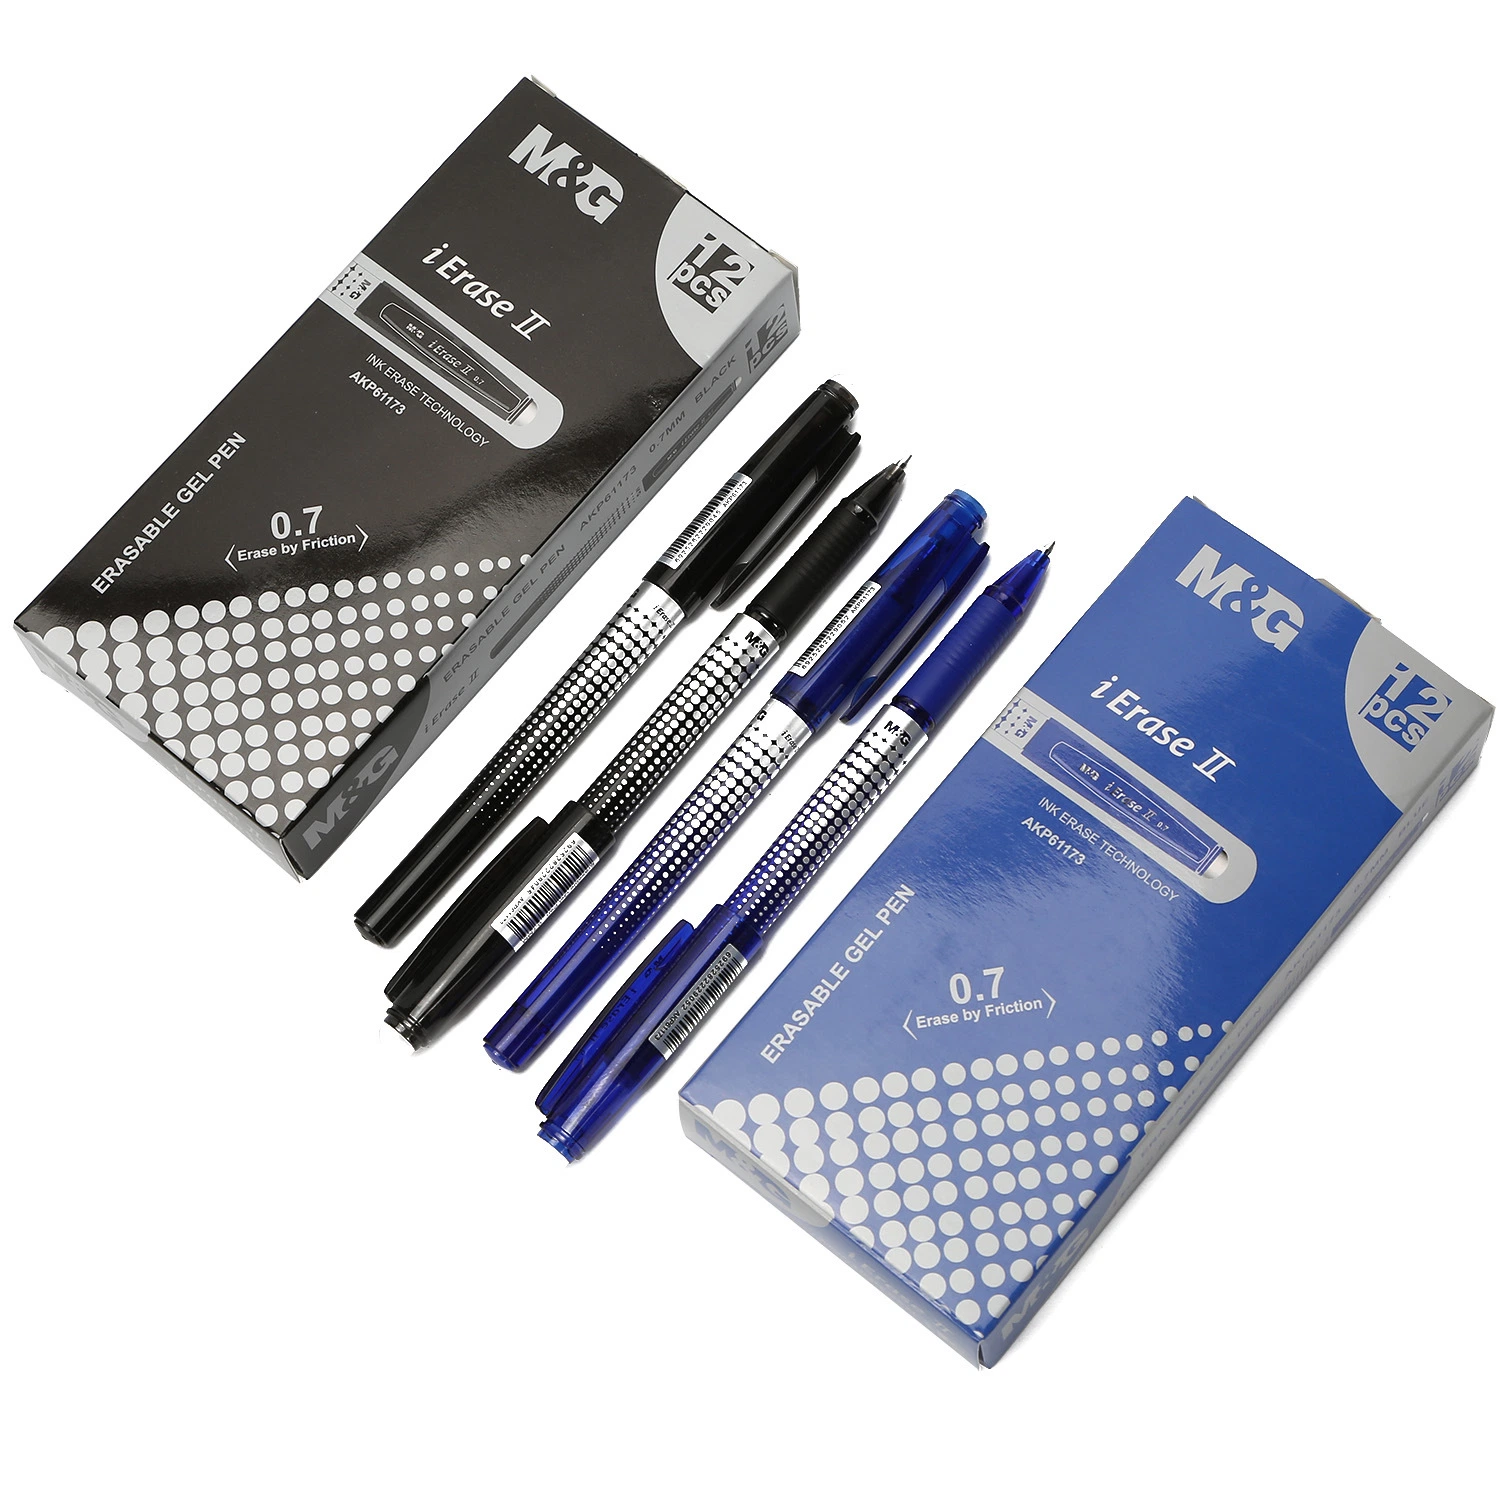 M&amp;G caliente Mayoreo de gel borrable plumas con Eraser tinta negra 0,7mm mejores ventas de bolígrafos borrables en Euro Erasable Gel Pen Para niños